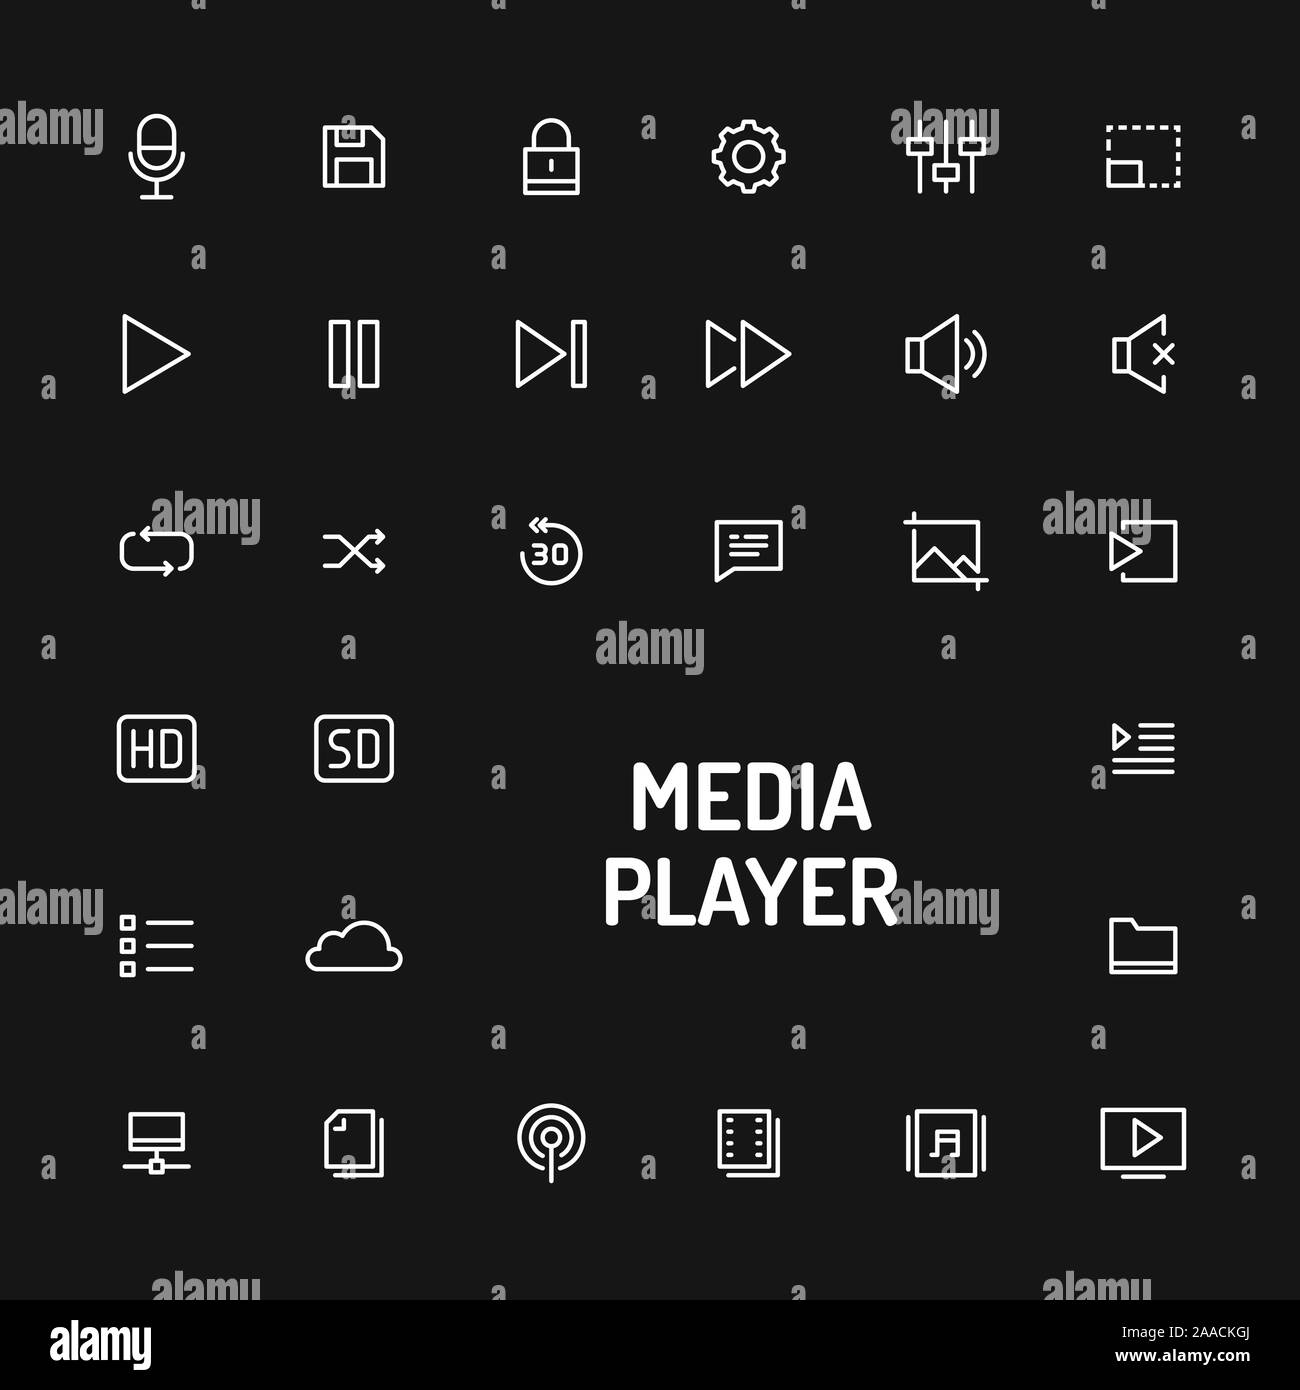 Einfache Weisse Linie Auf Schwarzen Hintergrund Fur Media Player App Isoliert Vektor Zeichen Und Symbole Sammlungen Fur Website Und Design App Vorlage Stock Vektorgrafik Alamy